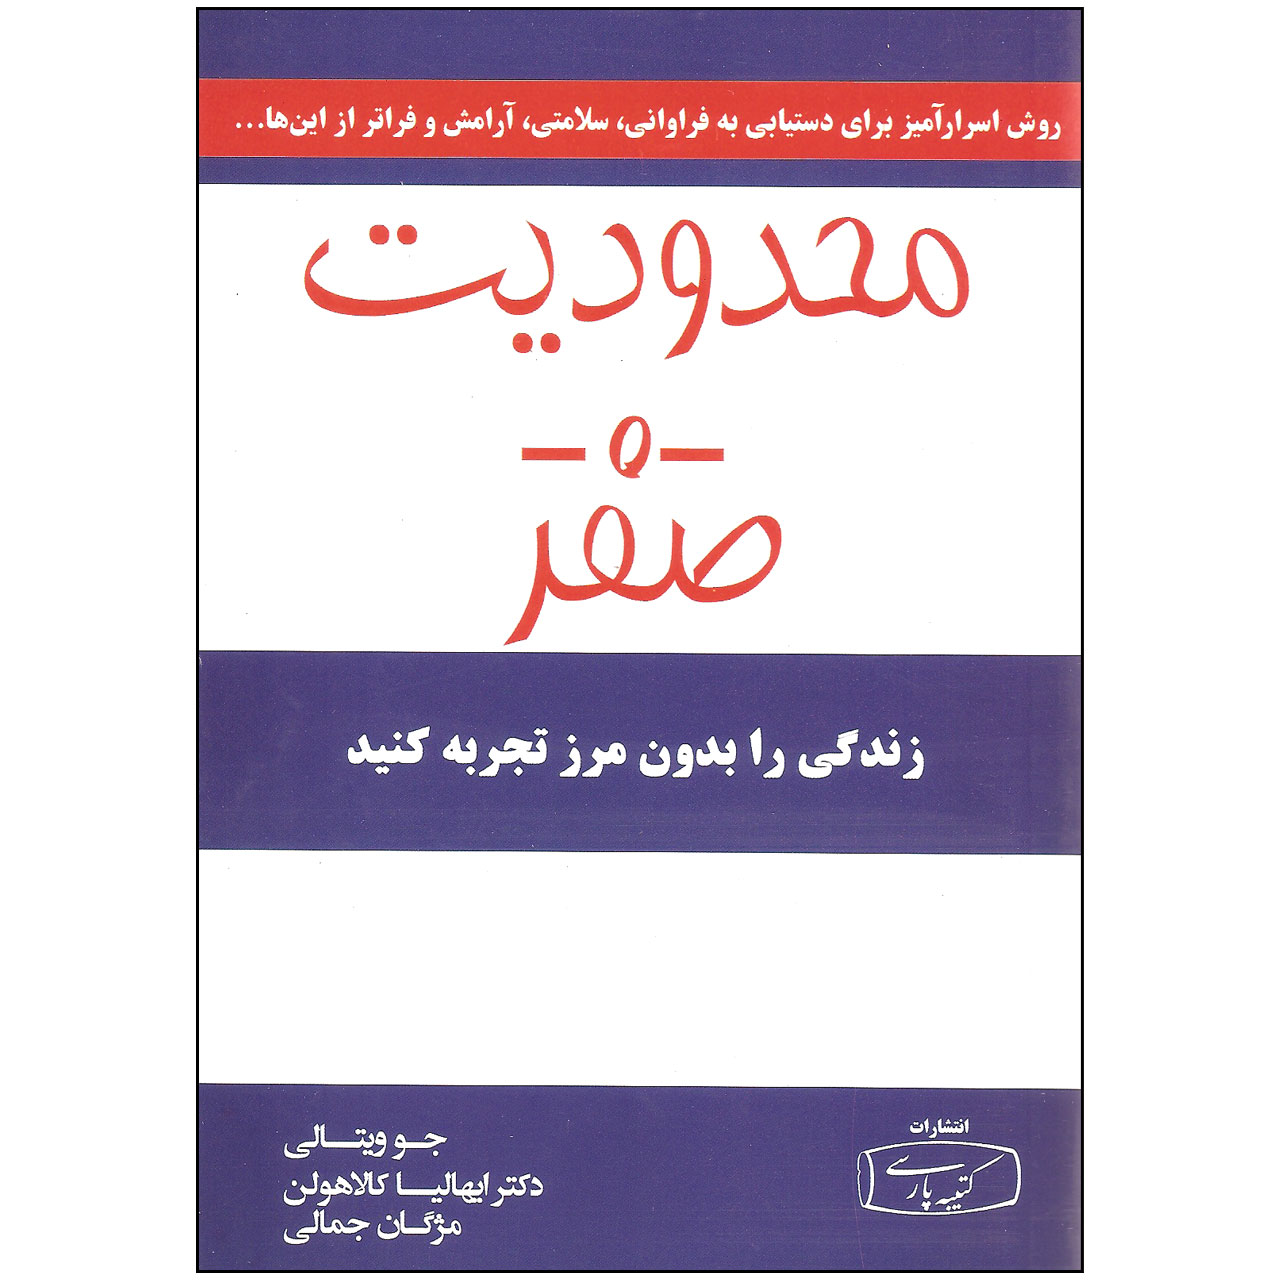 کتاب محدودیت صفر اثر جو ویتالی و ایهالیا کالاهولن انتشارات کتیبه پارسی